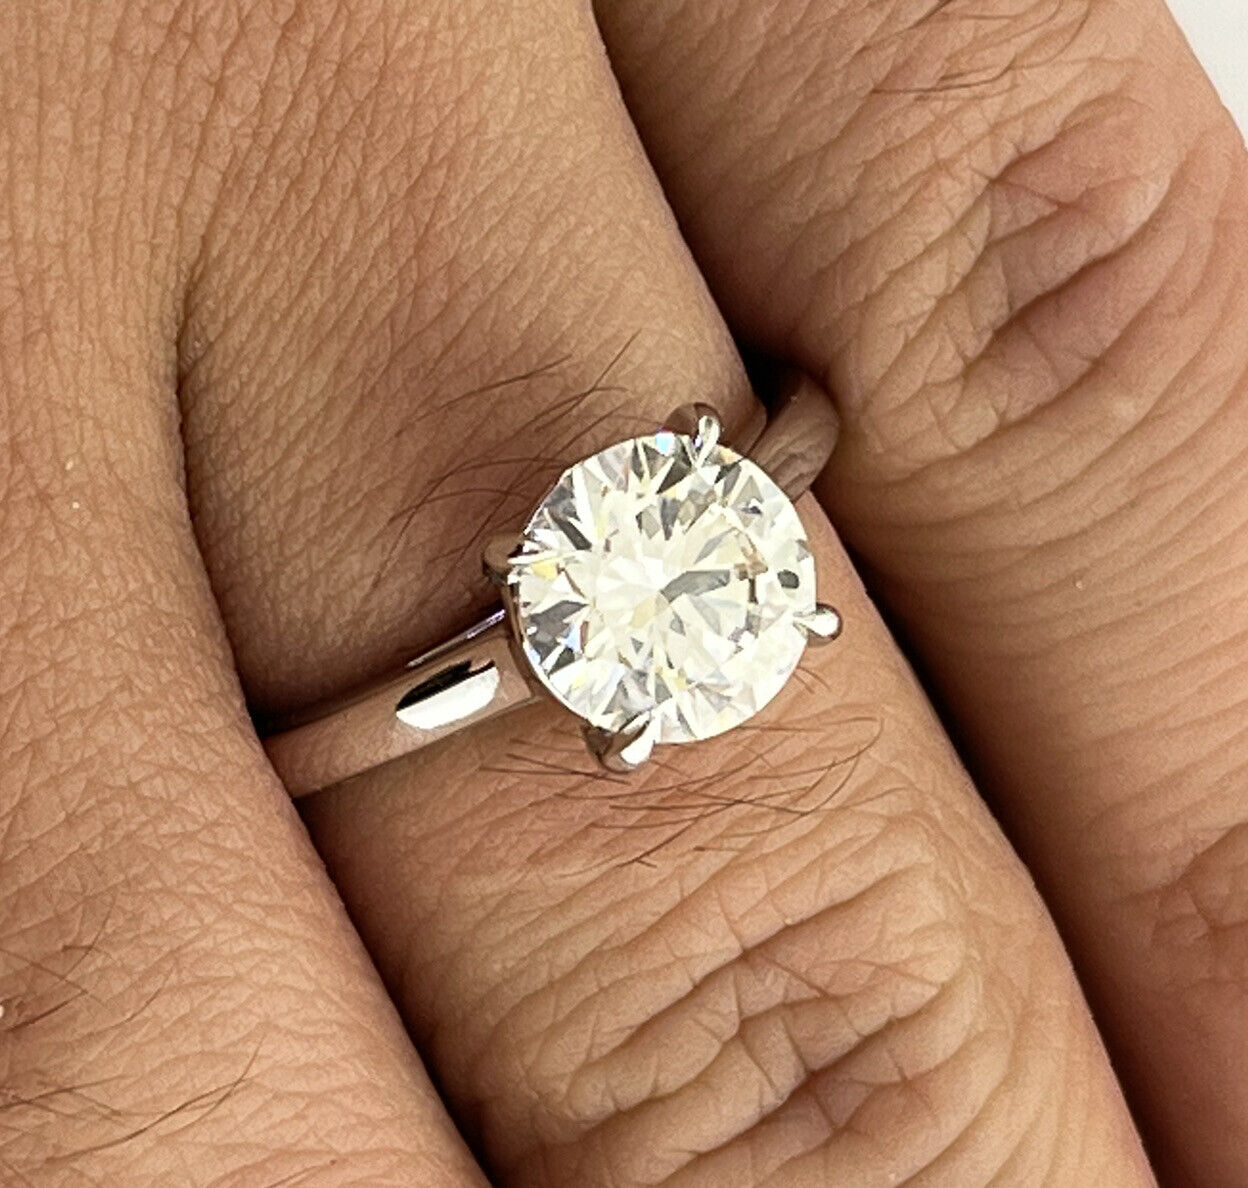 14k White Gold Ring 1.96 Carat Lab Grown Diamond Engagement Wedding Ring Size 7